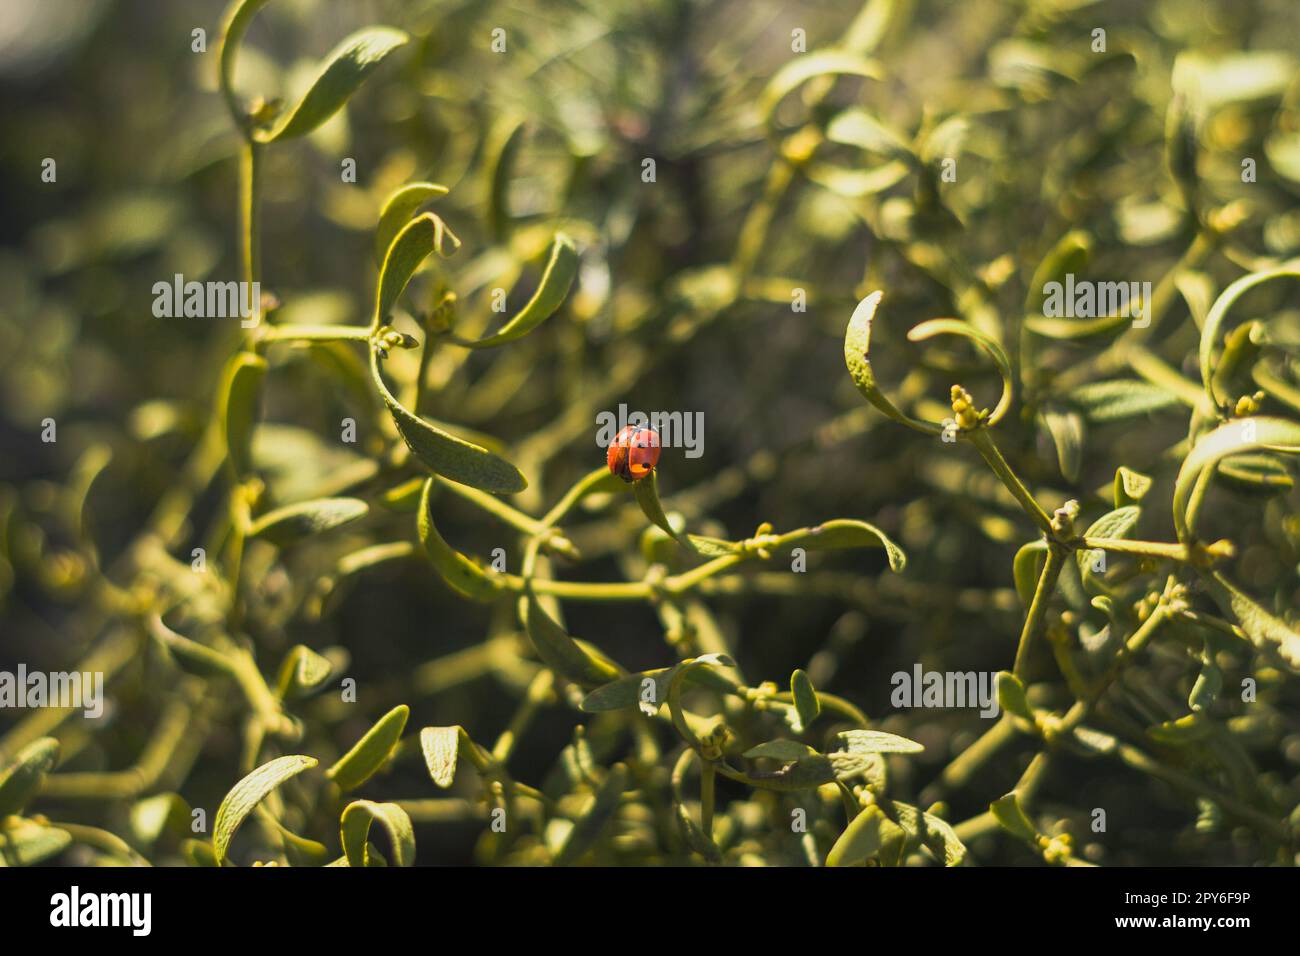 Nahaufnahme Marienkäfer auf Pflanzenblatt unter Sonnenlicht Konzeptfoto Stockfoto